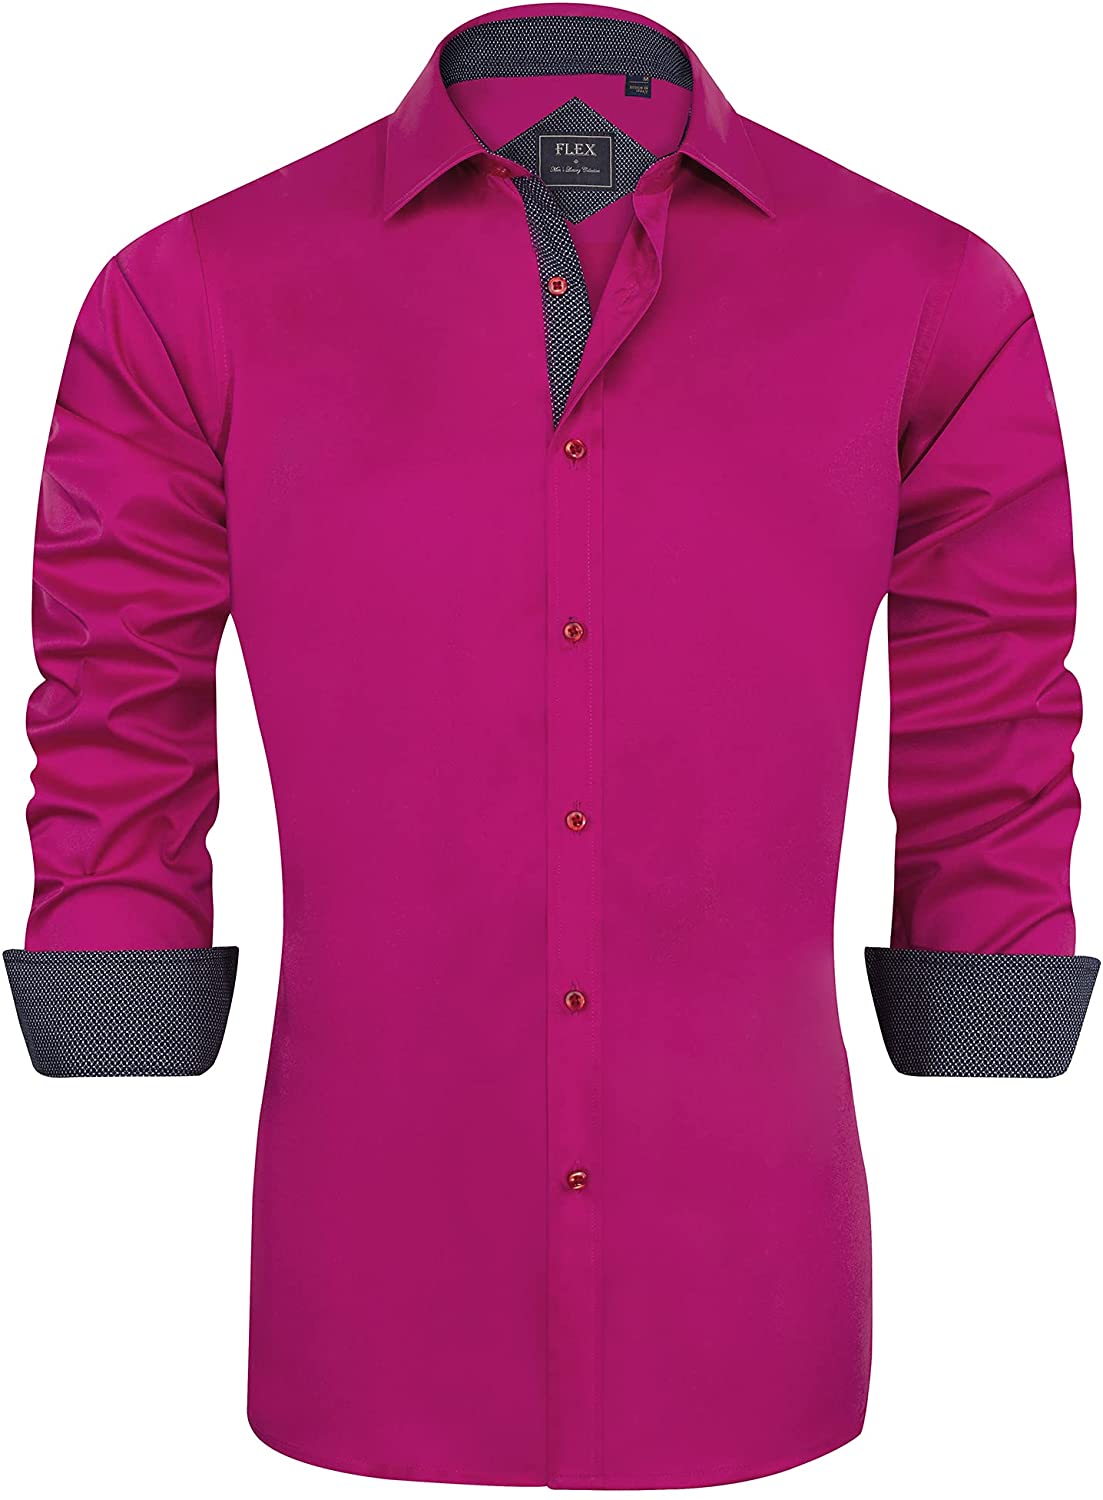 Should You Buy? J.Ver Men's Formal Dress Shirt 